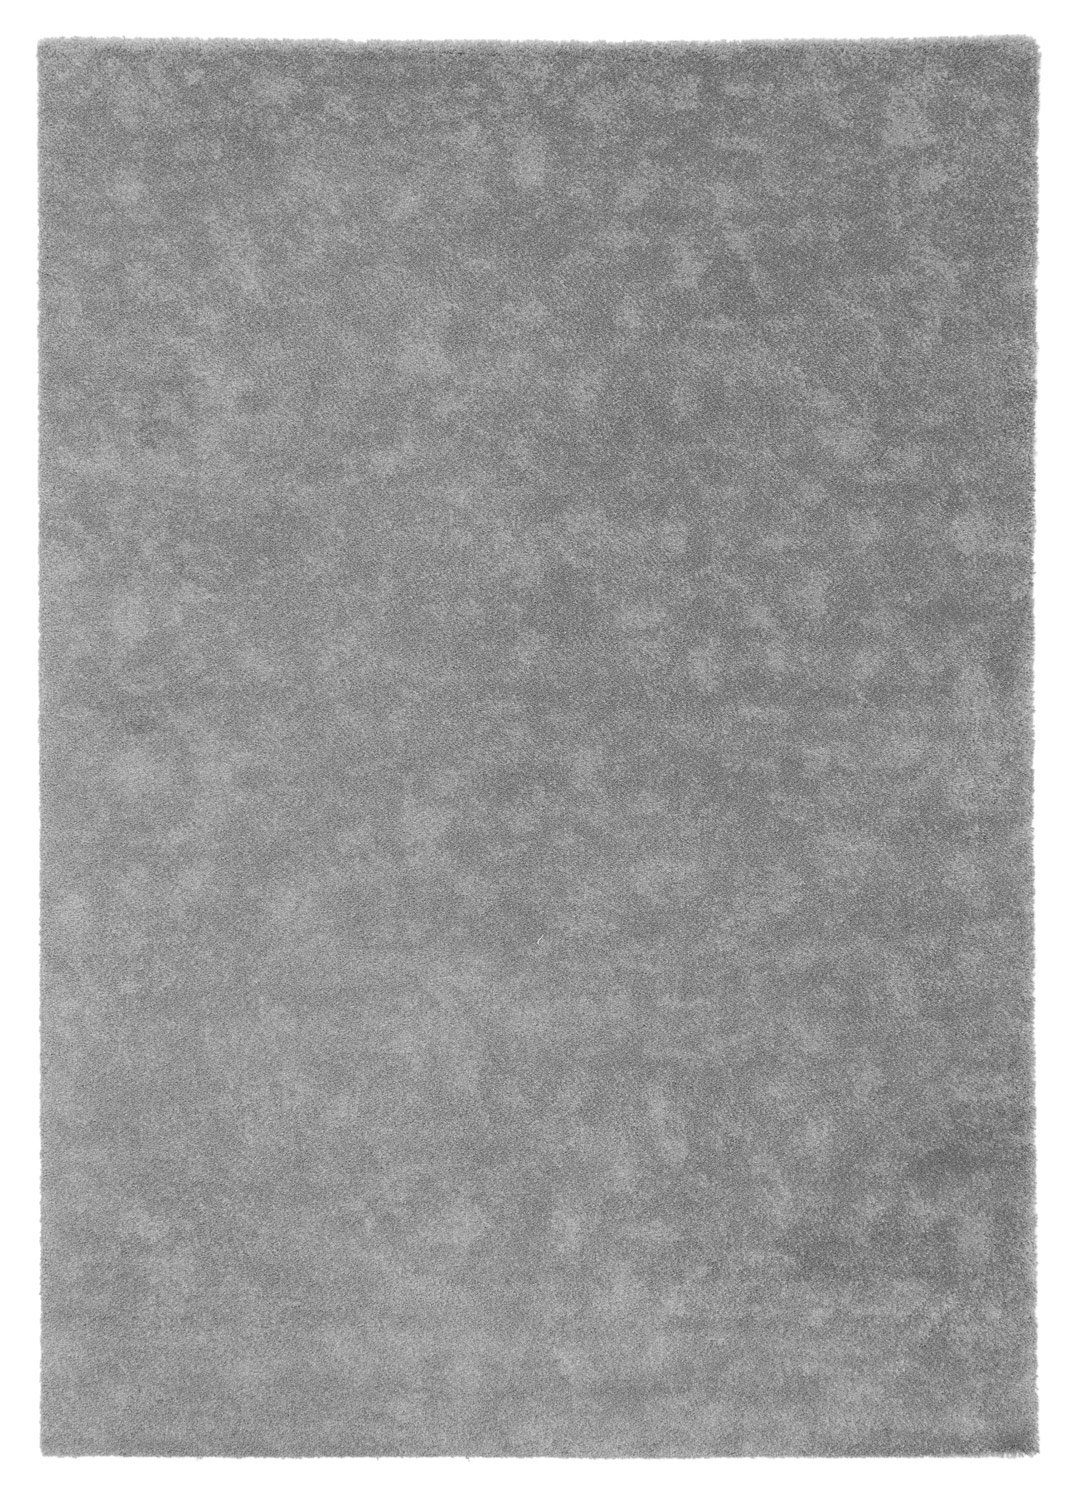 Teppich MOON, Polypropylen, Grau, 160 x 230 cm, Unifarben, Balta Rugs, rechteckig, Höhe: 17 mm